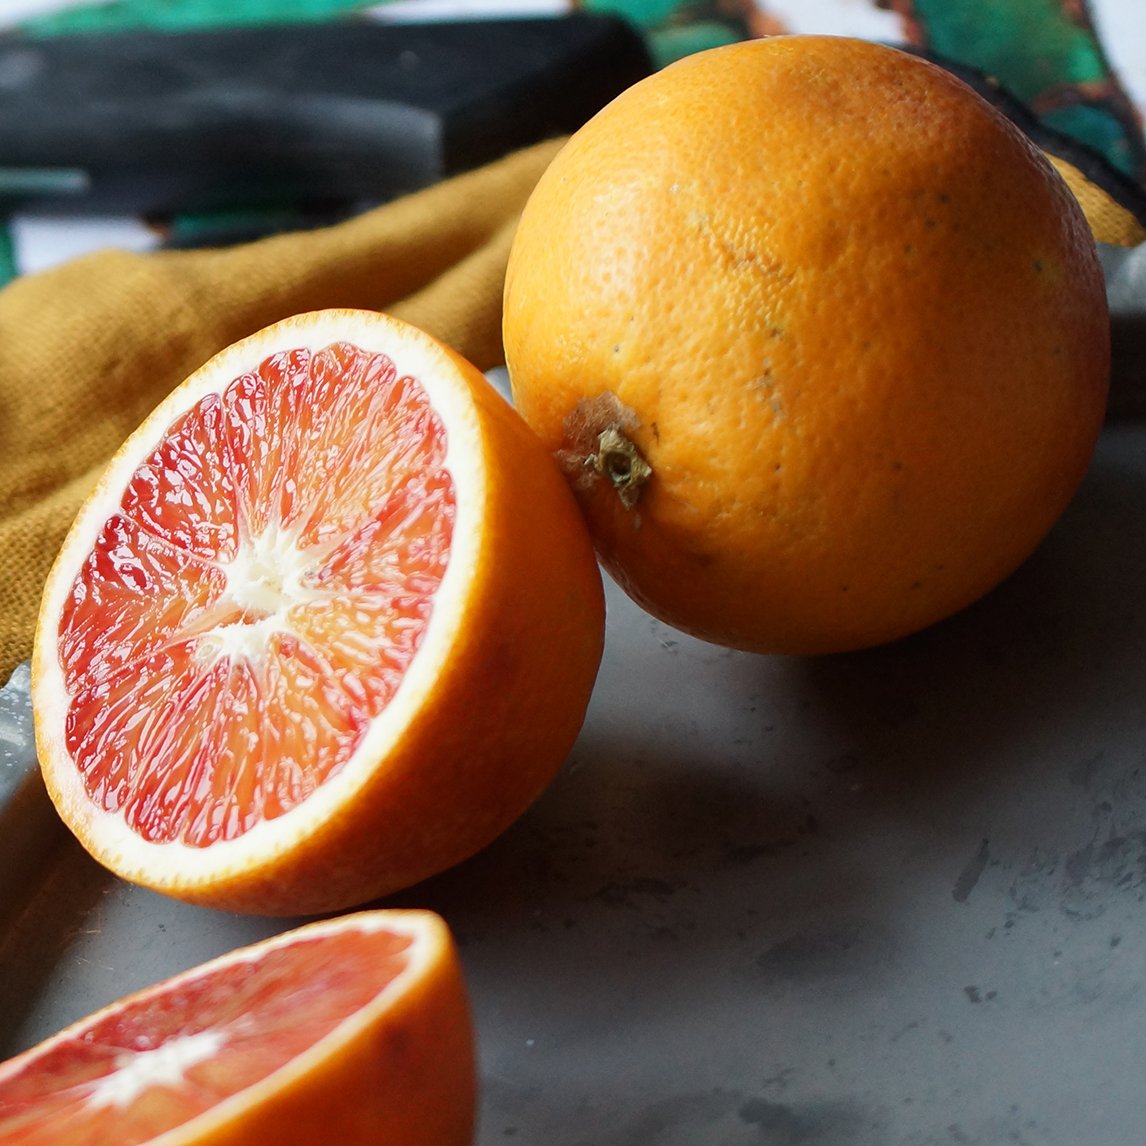 Orange - Blood Orange 'Tarocco Ippolito'